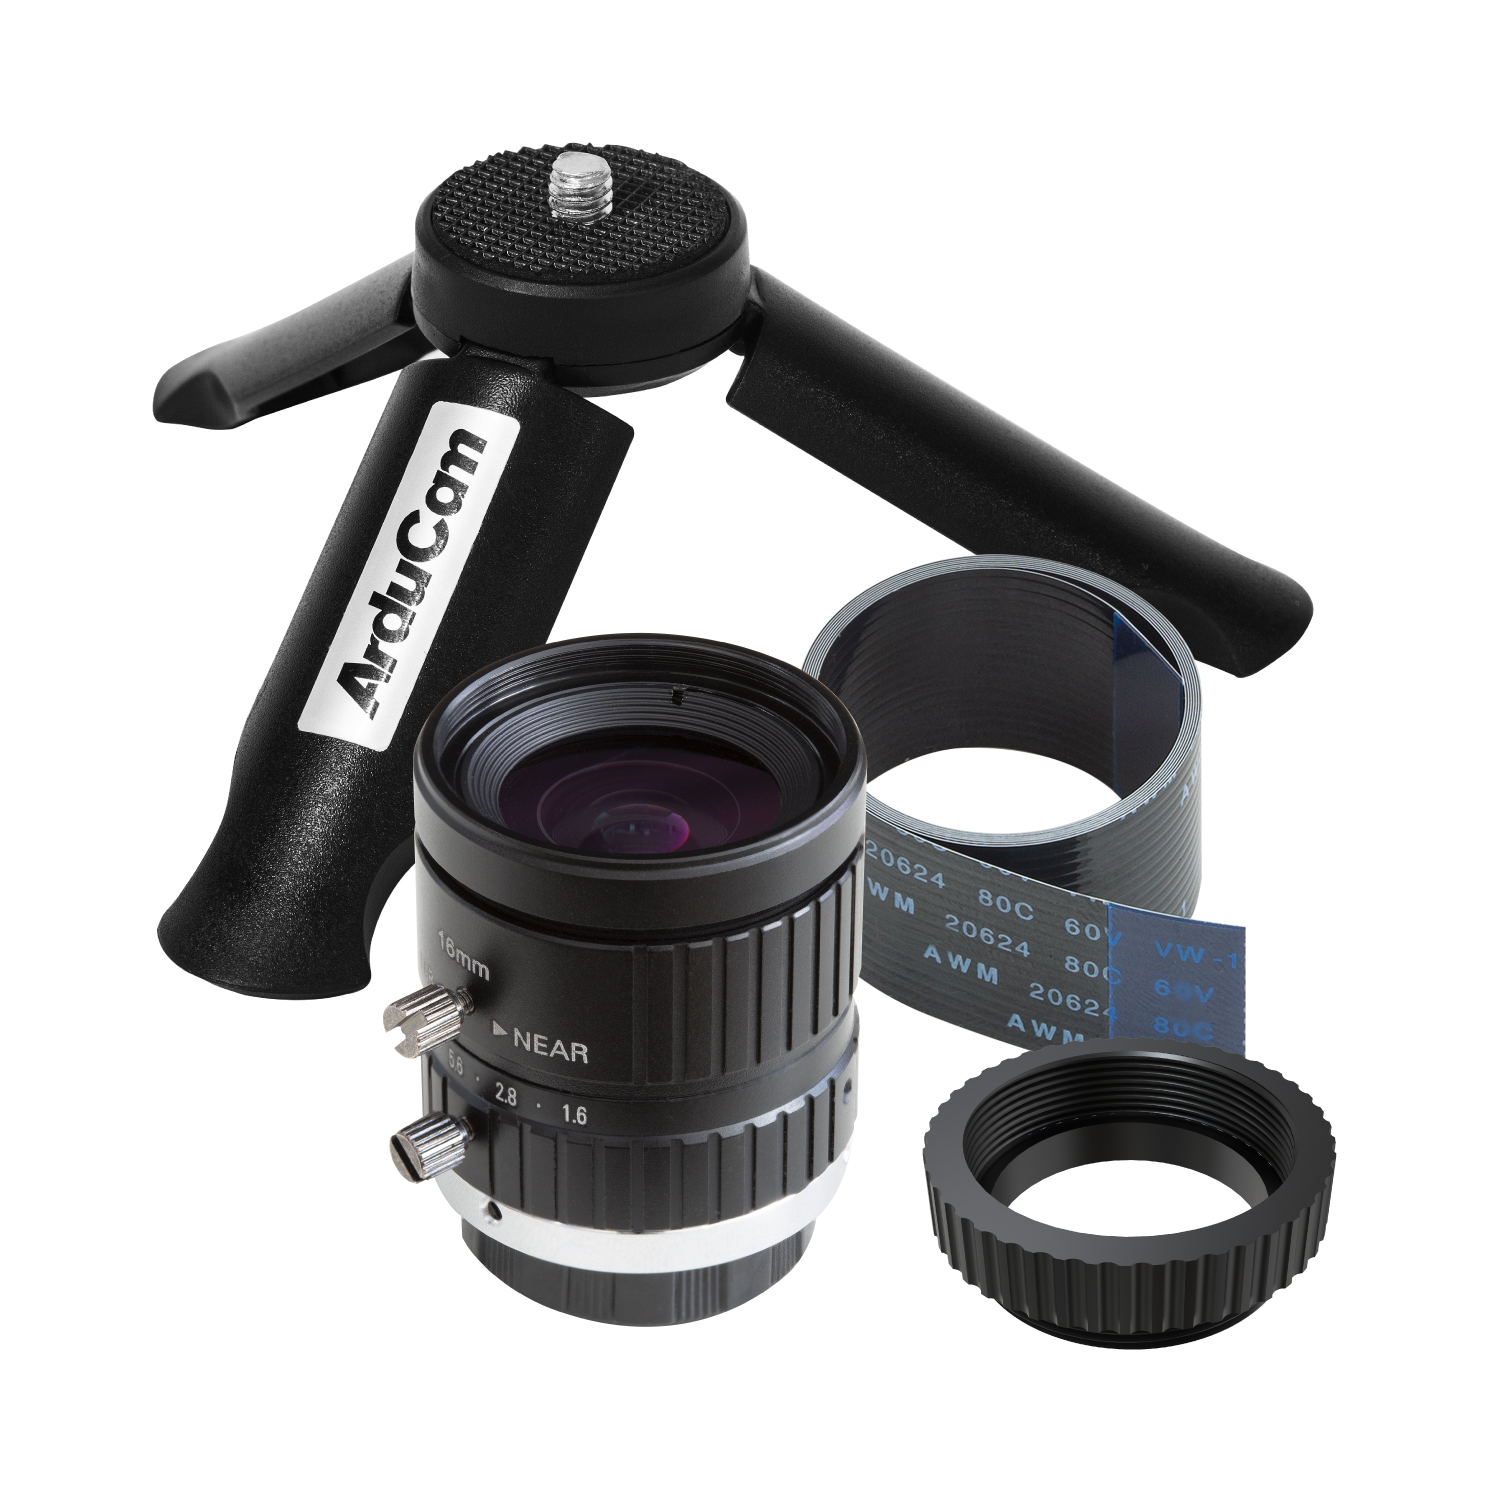 Arducam C-Mount Lens Bundle for Raspberry Pi HQ Camera, 16mm Focal 